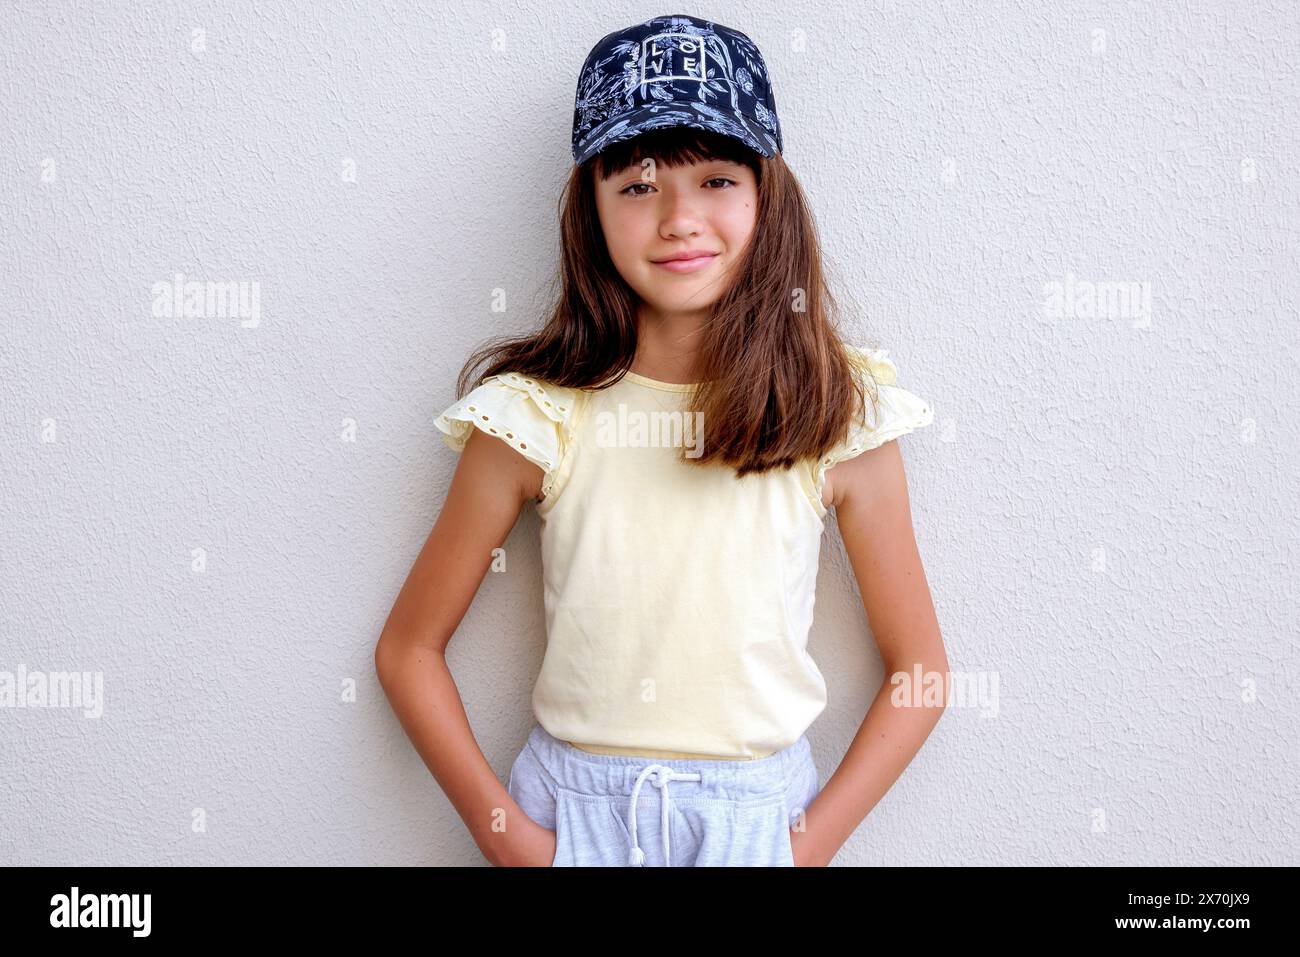 Ein schönes elfjähriges Mädchen, das eine Baseballmütze trägt Stockfoto